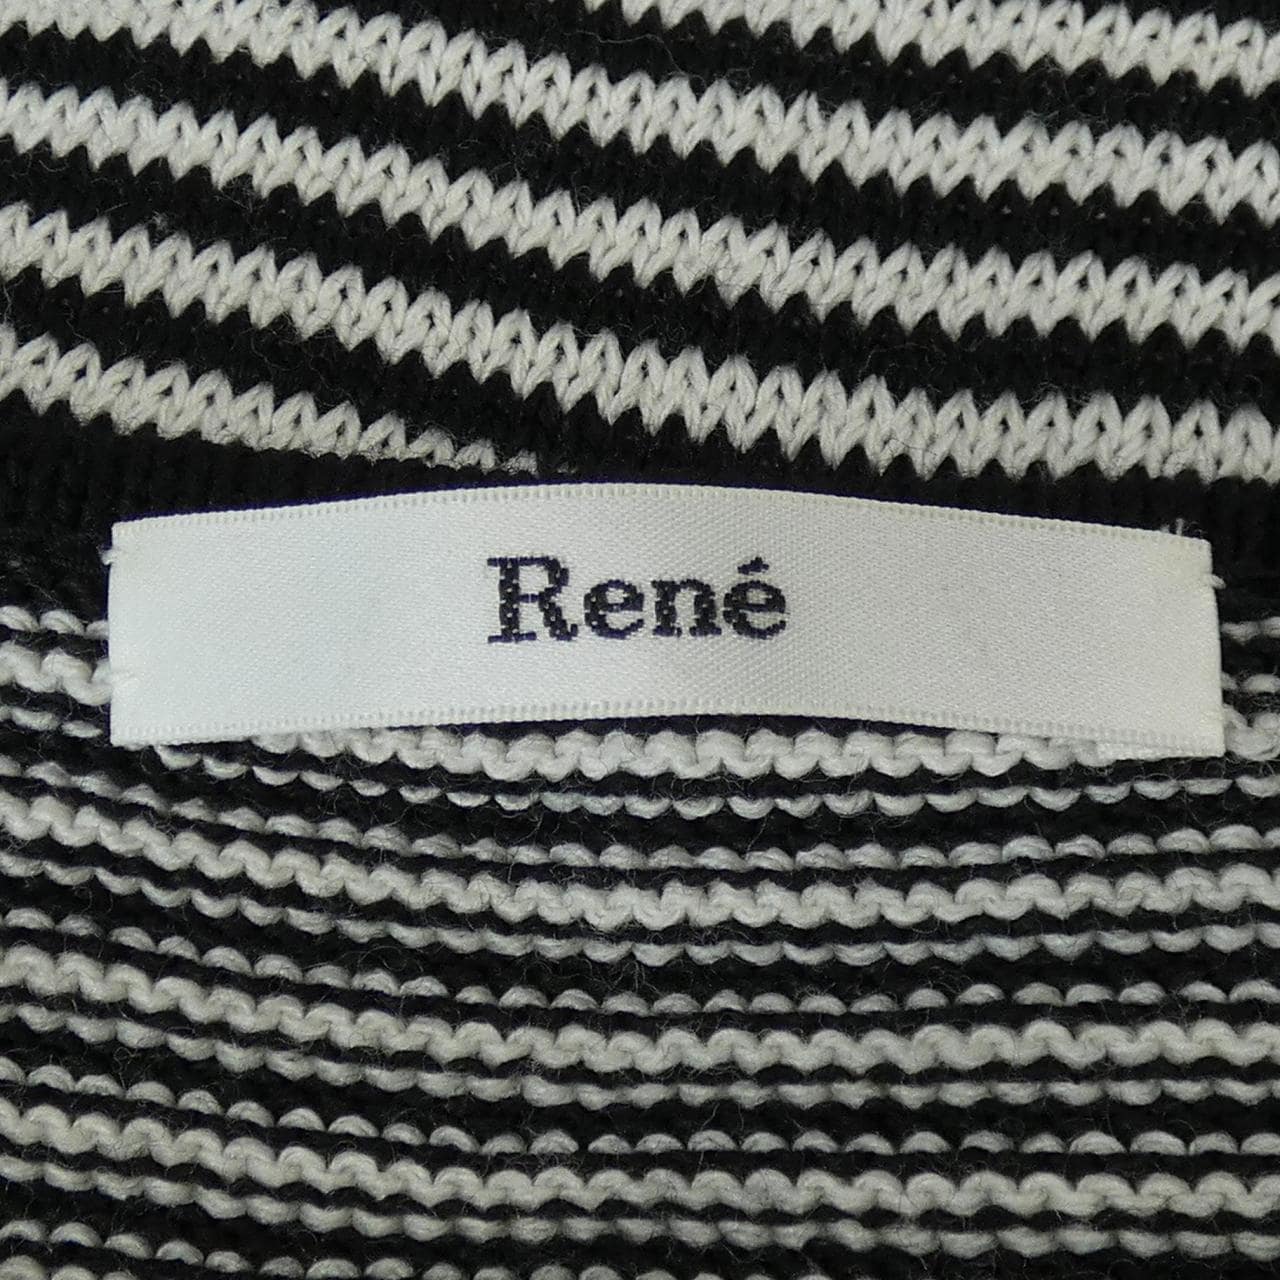 Rene RENE knit